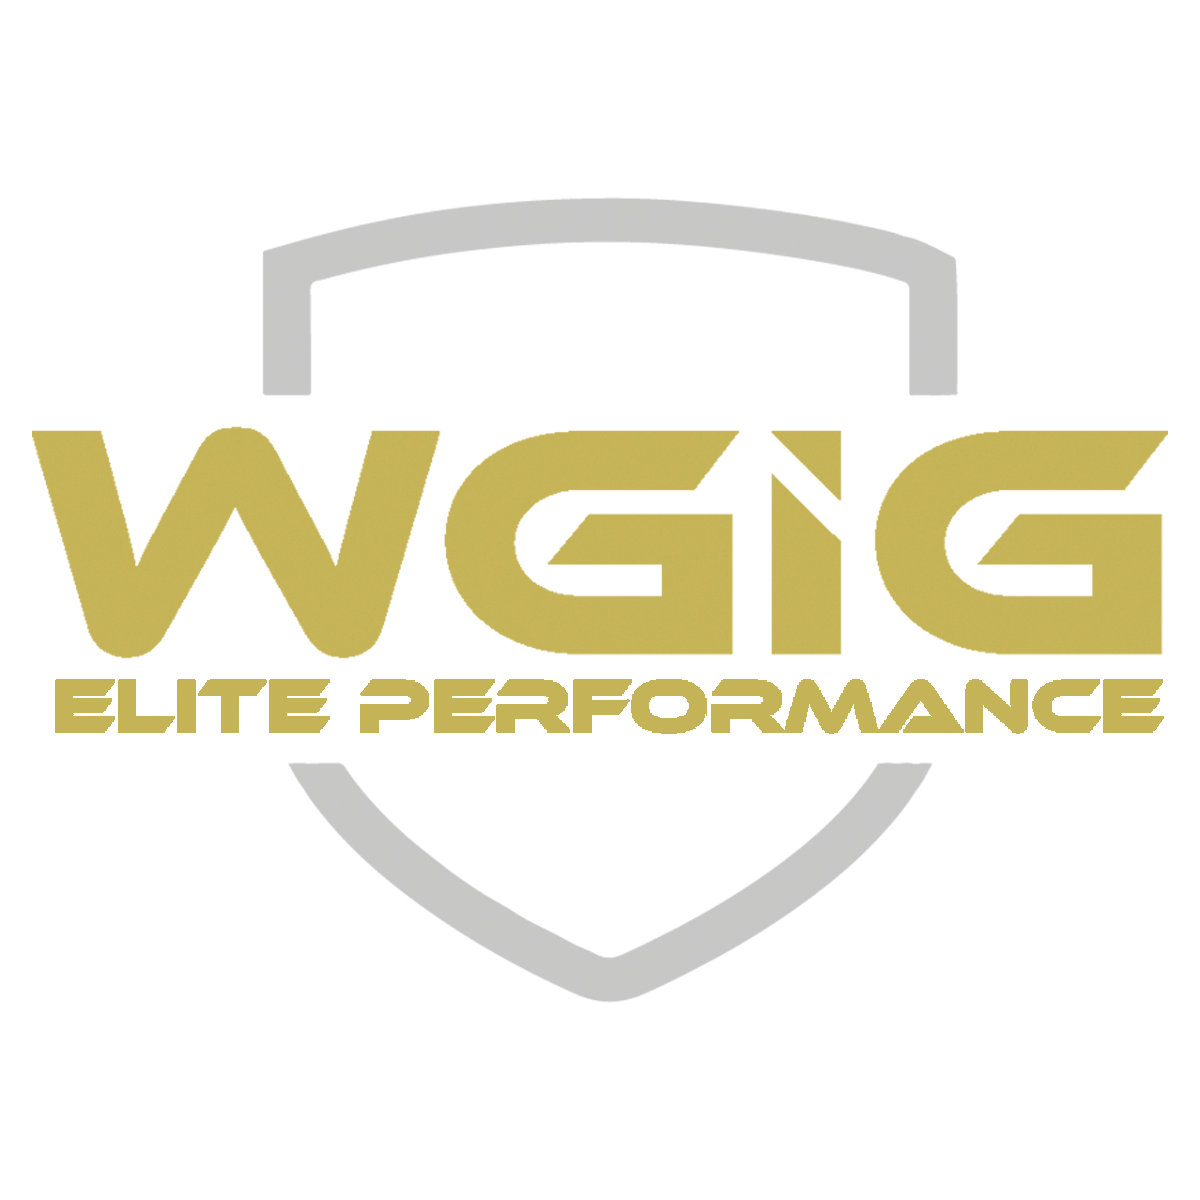 WGIG Elite Performance Team Store